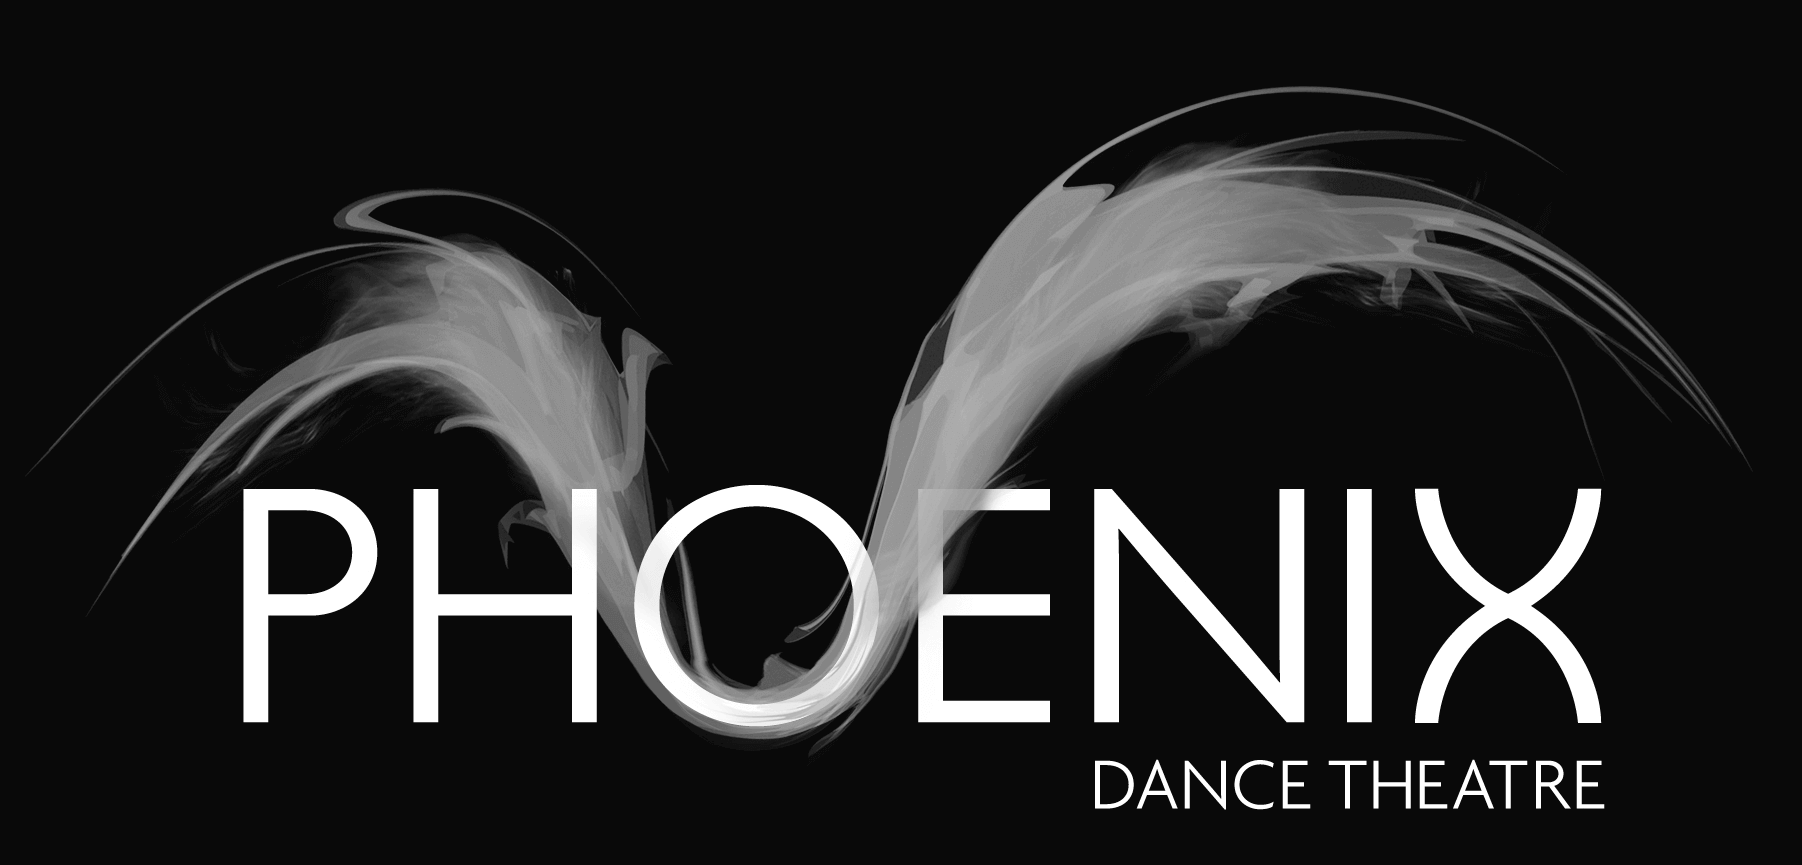 Pheonix Dance Theatre